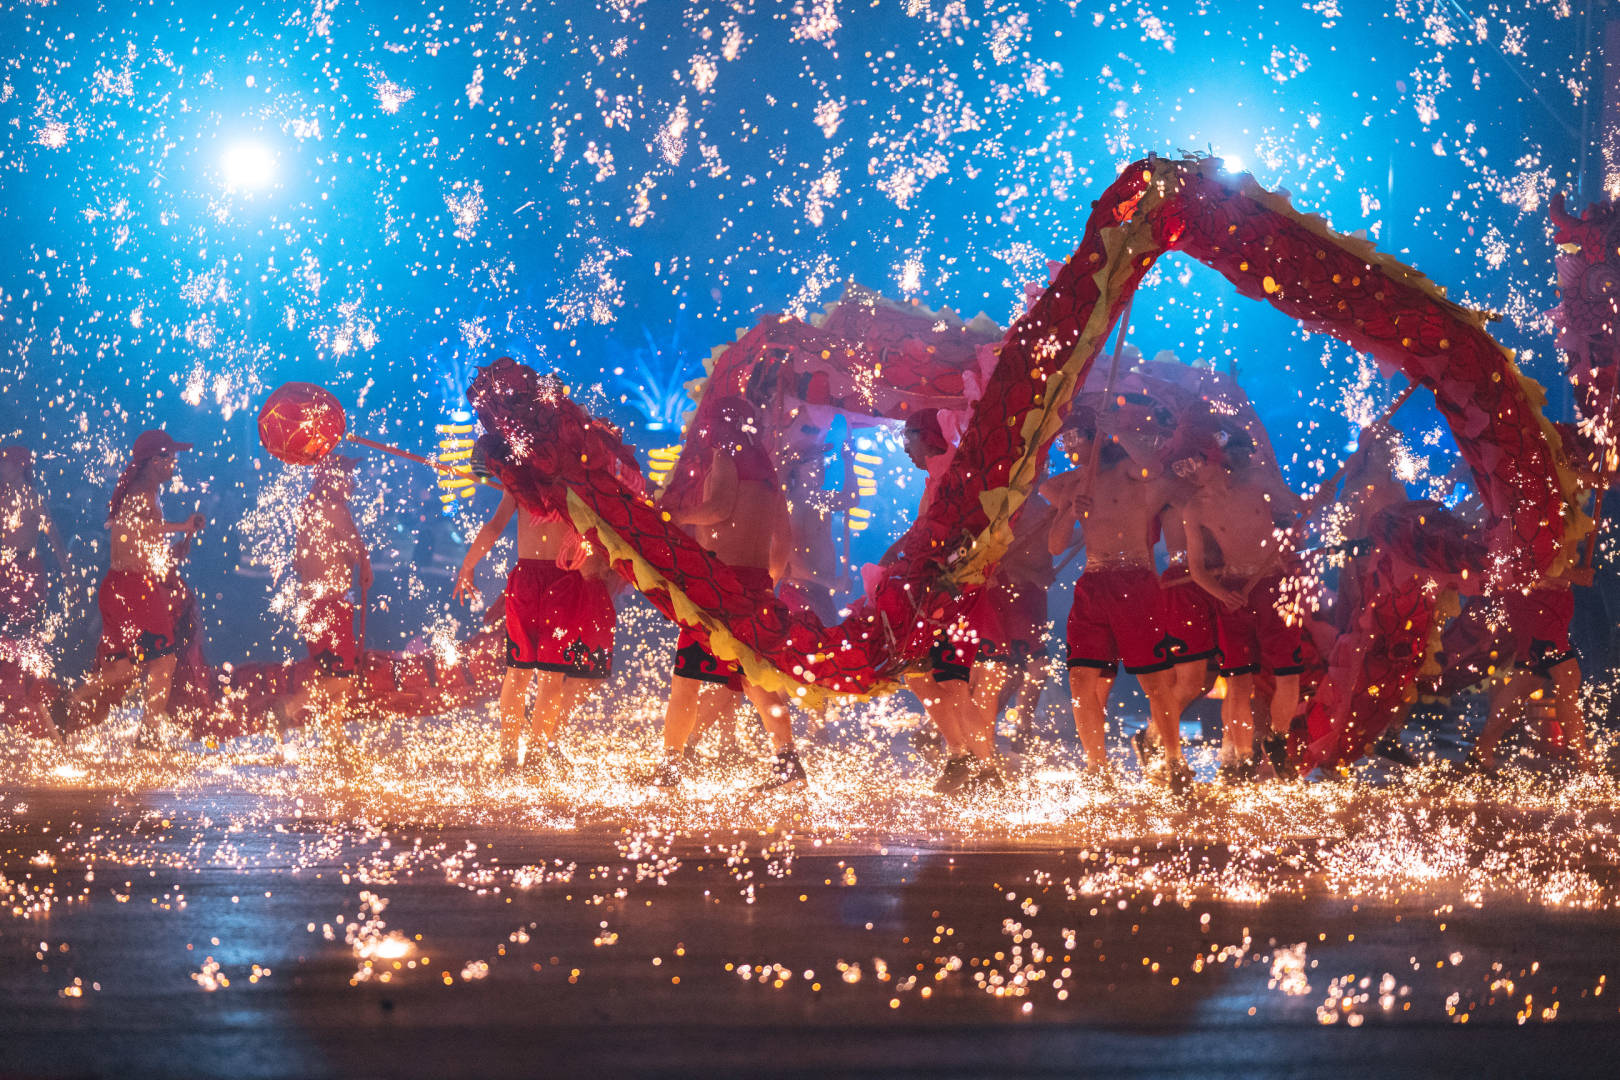 Tongliang Fire Dragon Dance in Tongliang District of Chongqing.